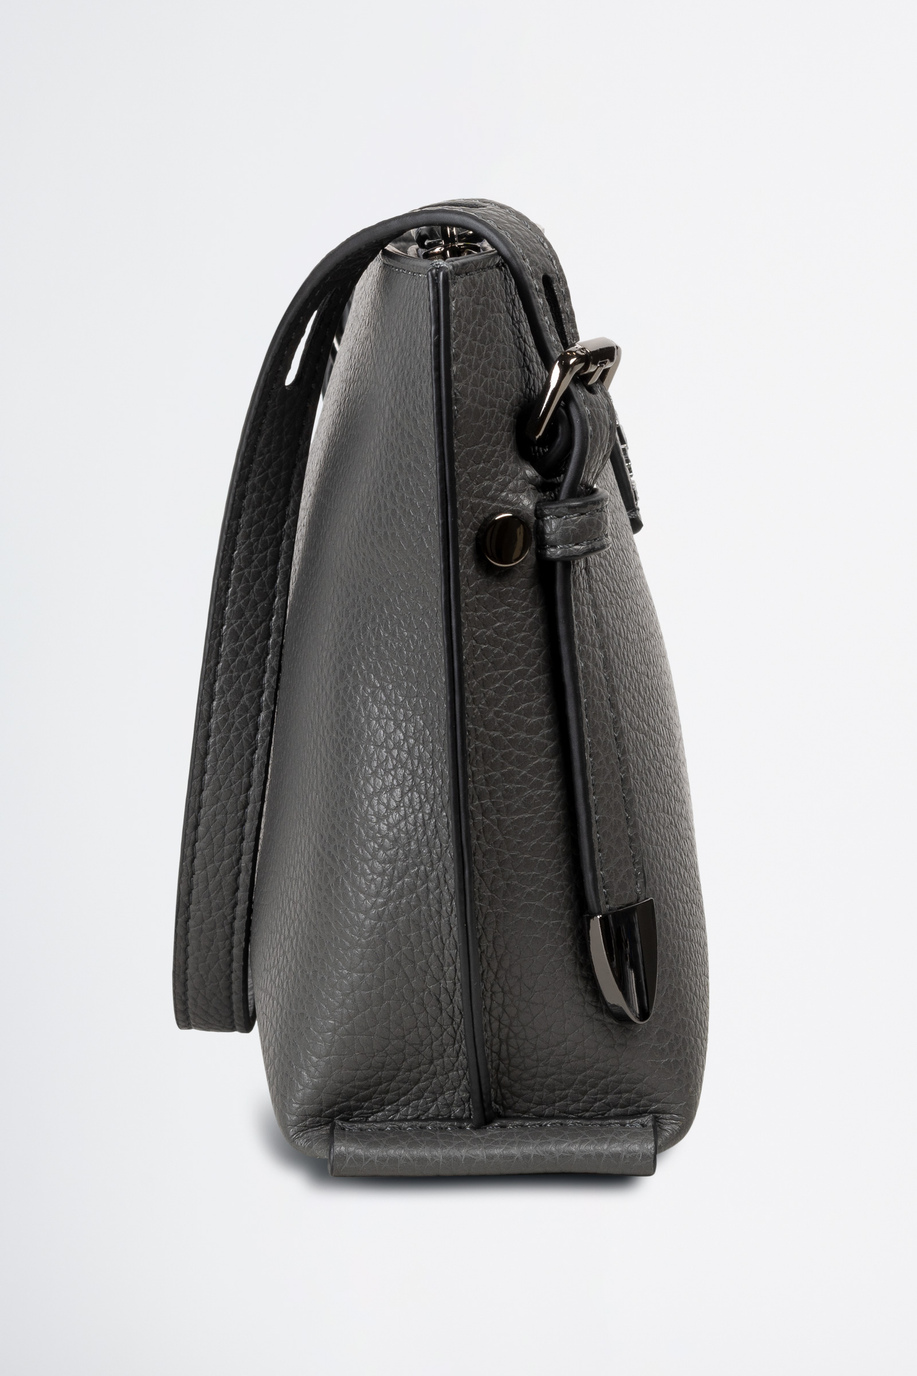 Tasche aus synthetischem Gewebe - Taschen | La Martina - Official Online Shop